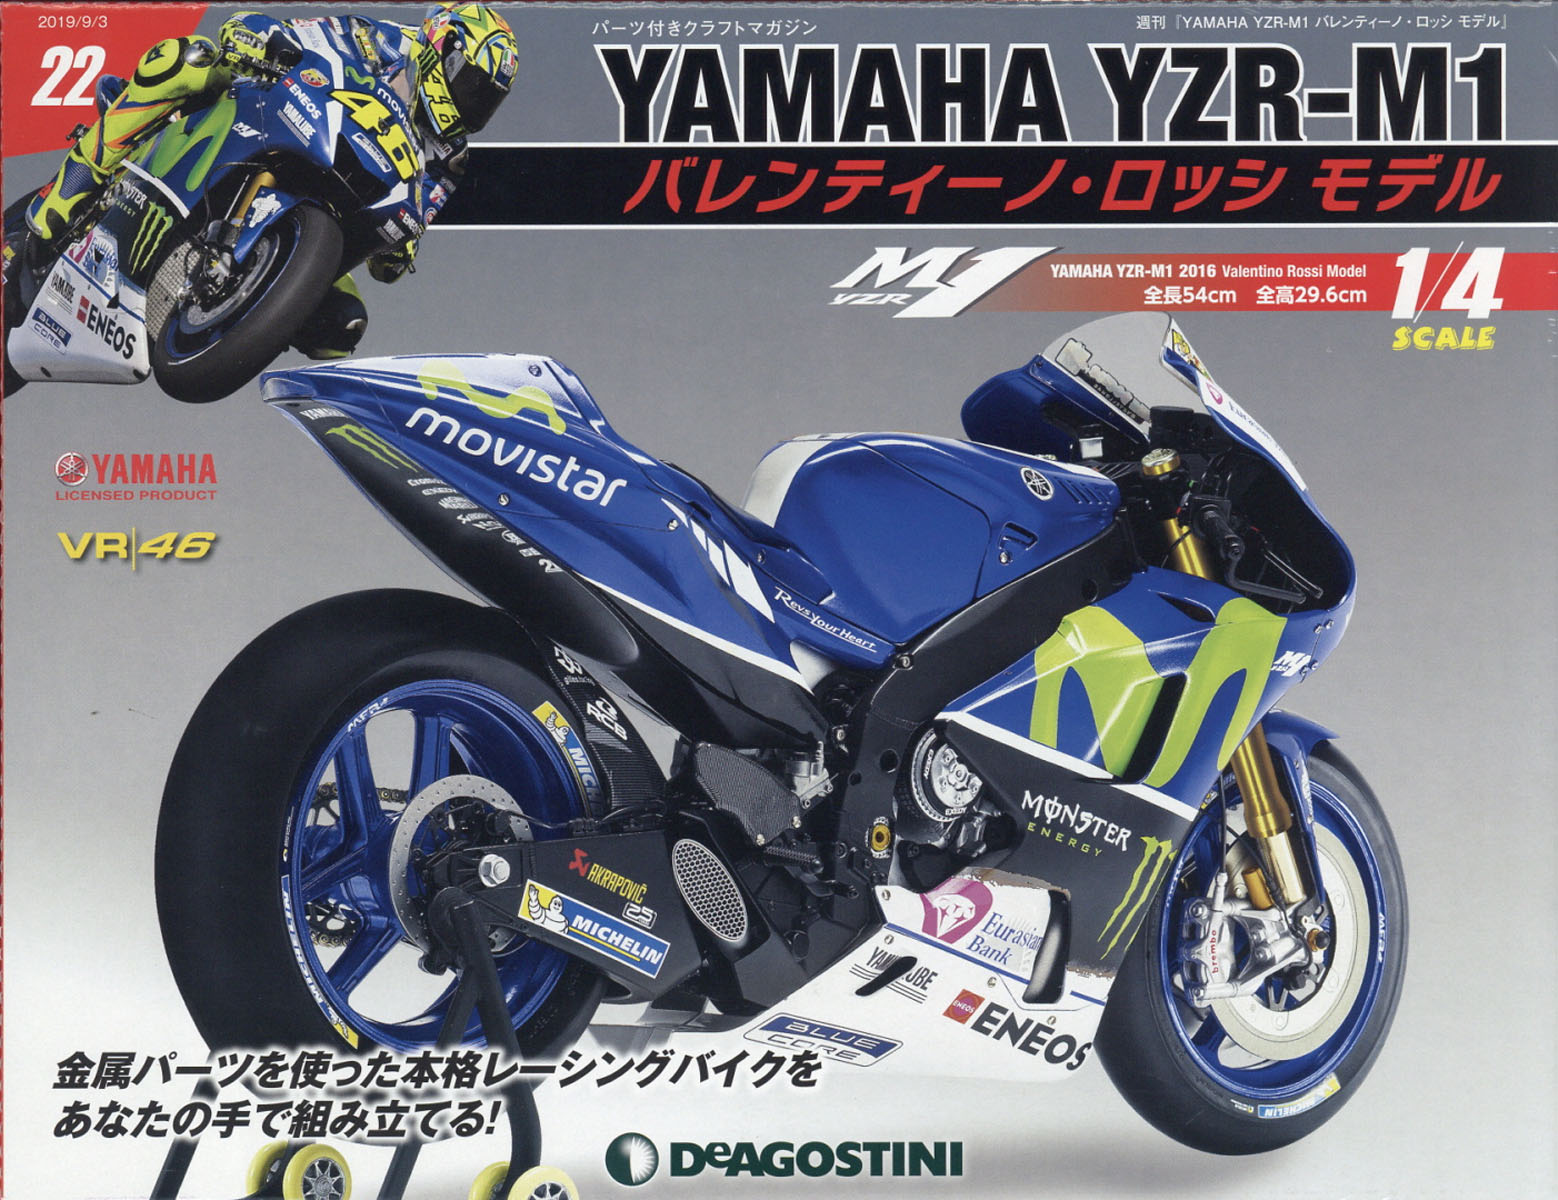 週刊 YAMAHA YZR-1 バレンティーノ・ロッシ モデル 2019年 9/3号 [雑誌]